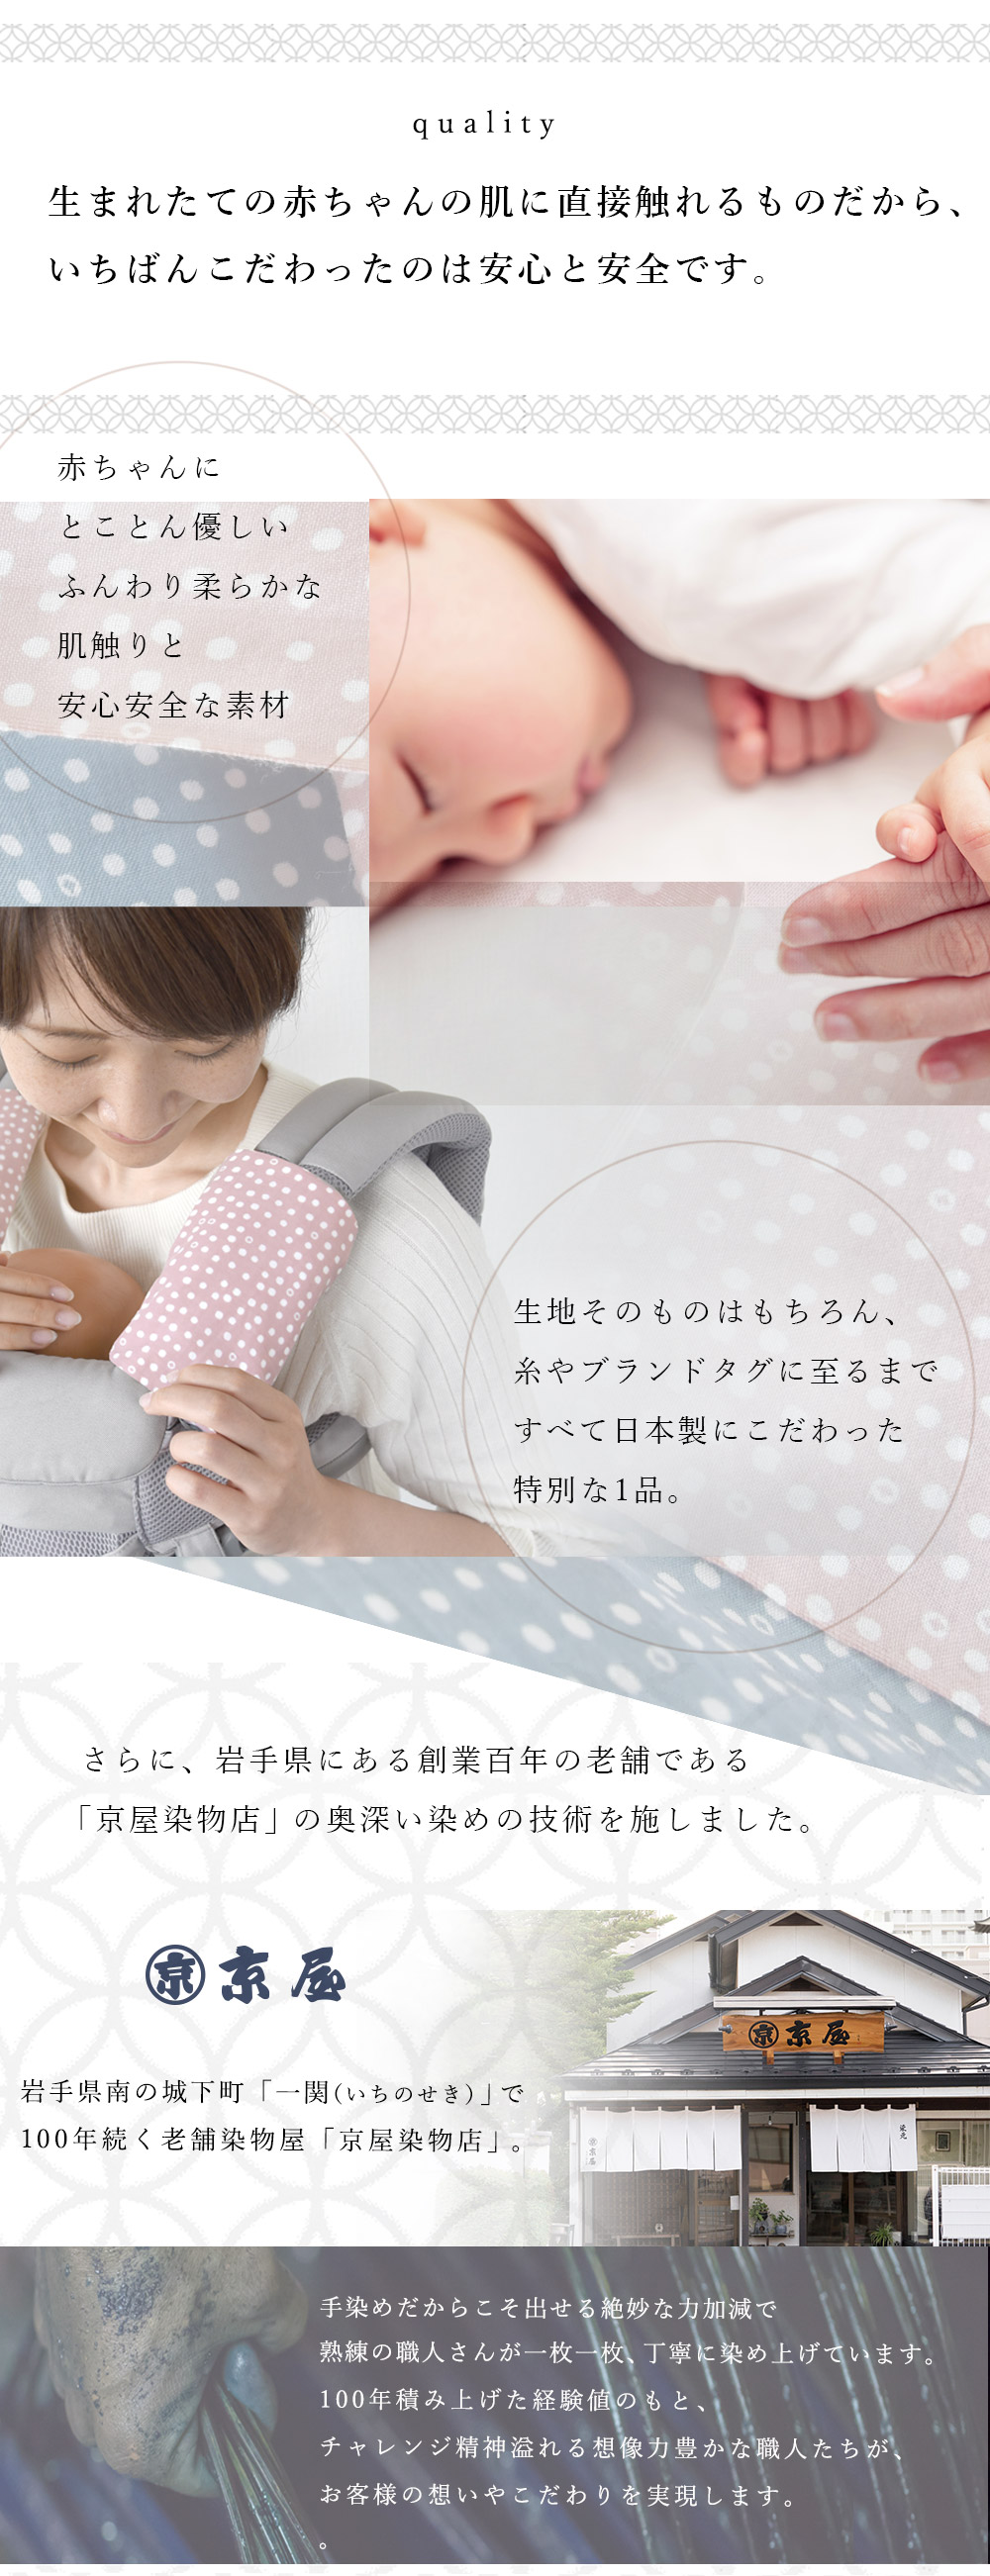 赤ちゃんにとことん優しいふんわり柔らかな肌触りと安心安全な素材。糸やタグに至るまですべて日本製素材を使用